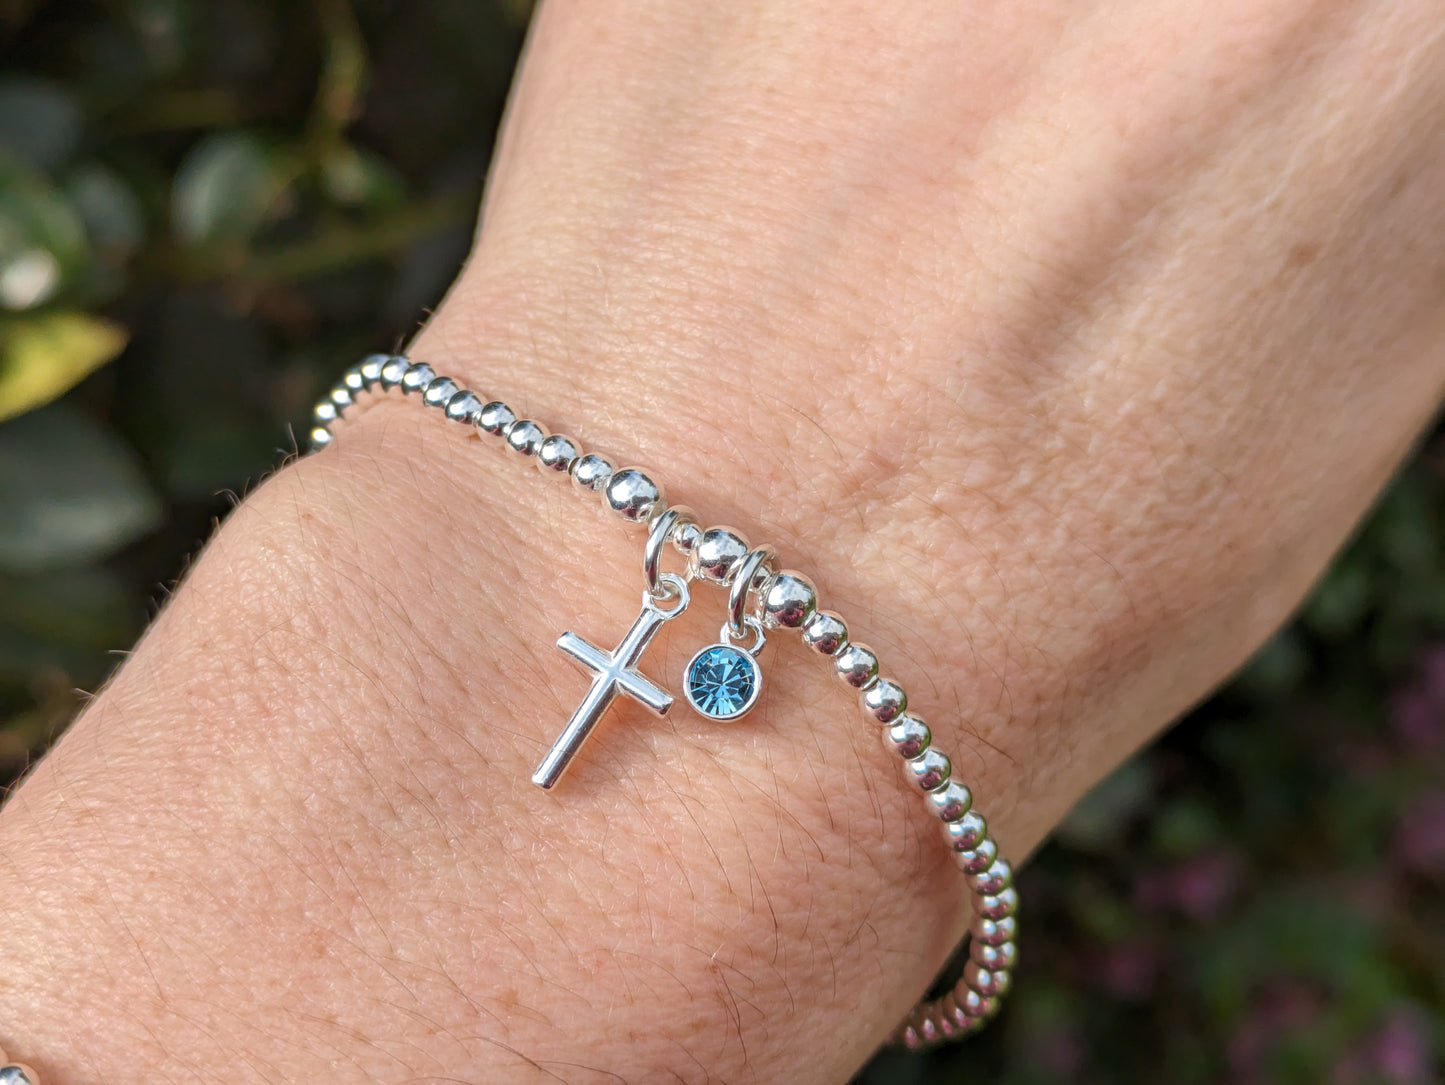 Cross bracelet with birthstone charm.